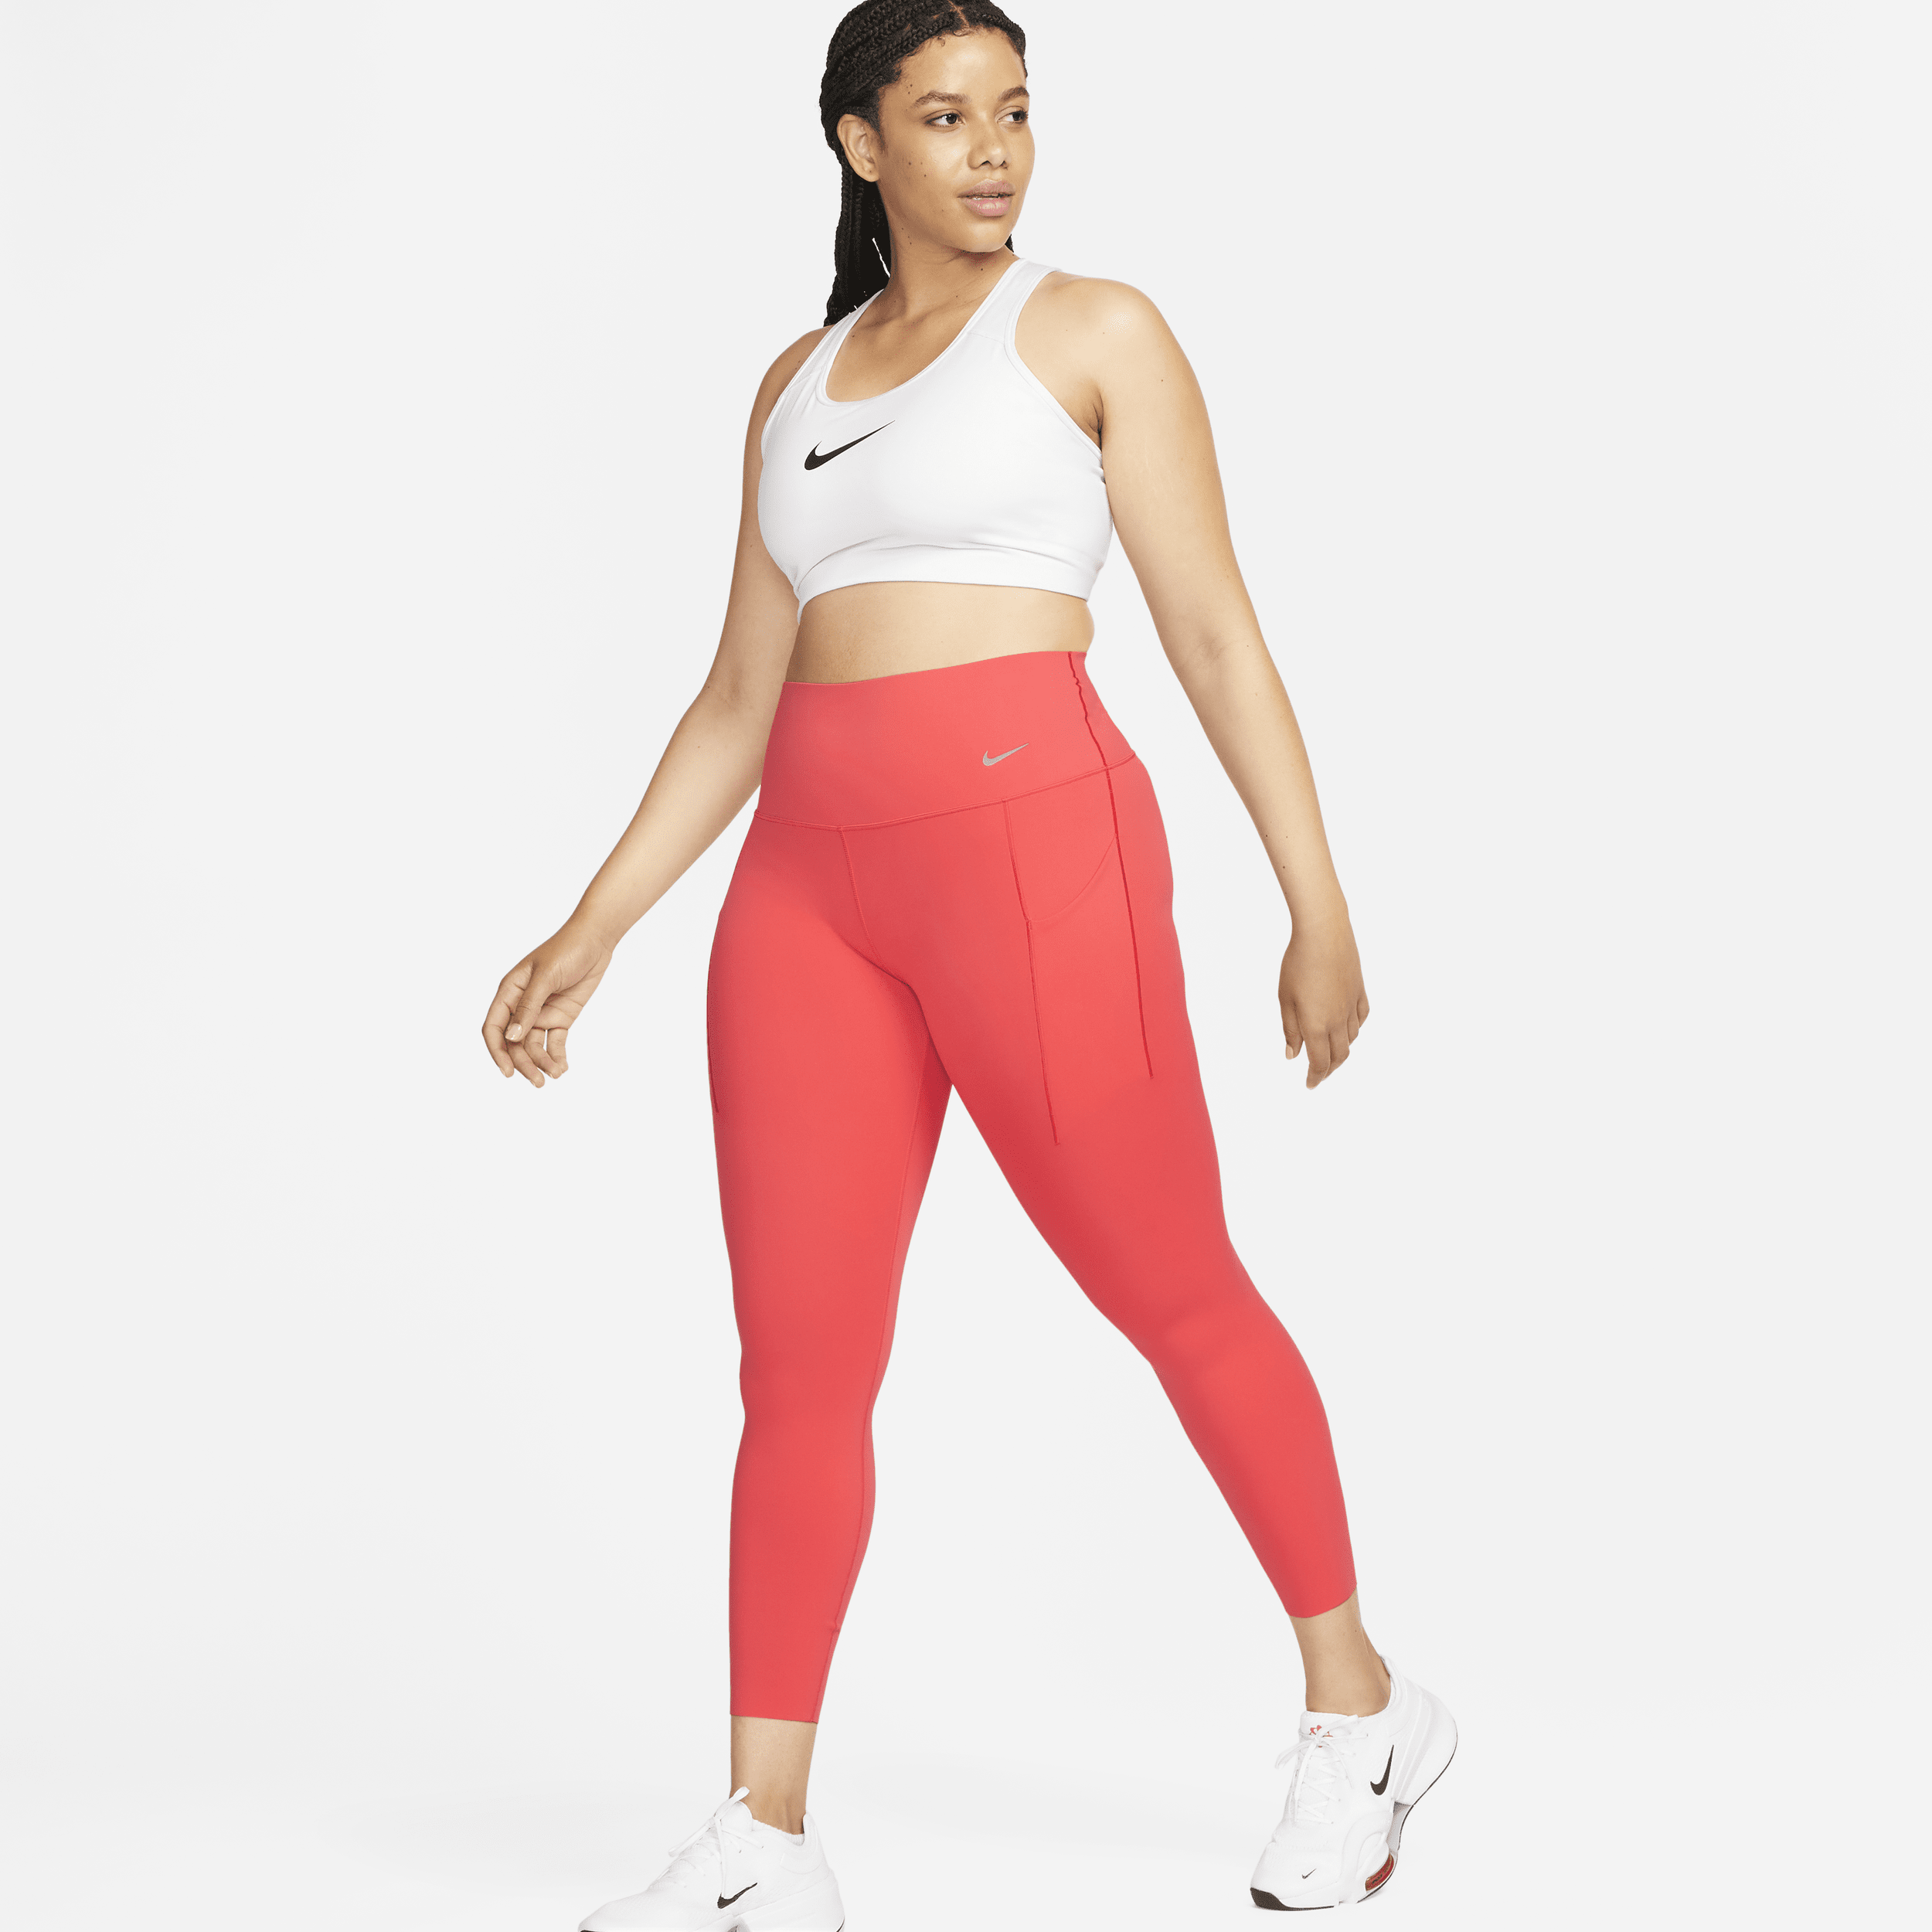 Nike Universa-leggings i 7/8 længde med medium støtte, høj talje og lommer til kvinder - rød